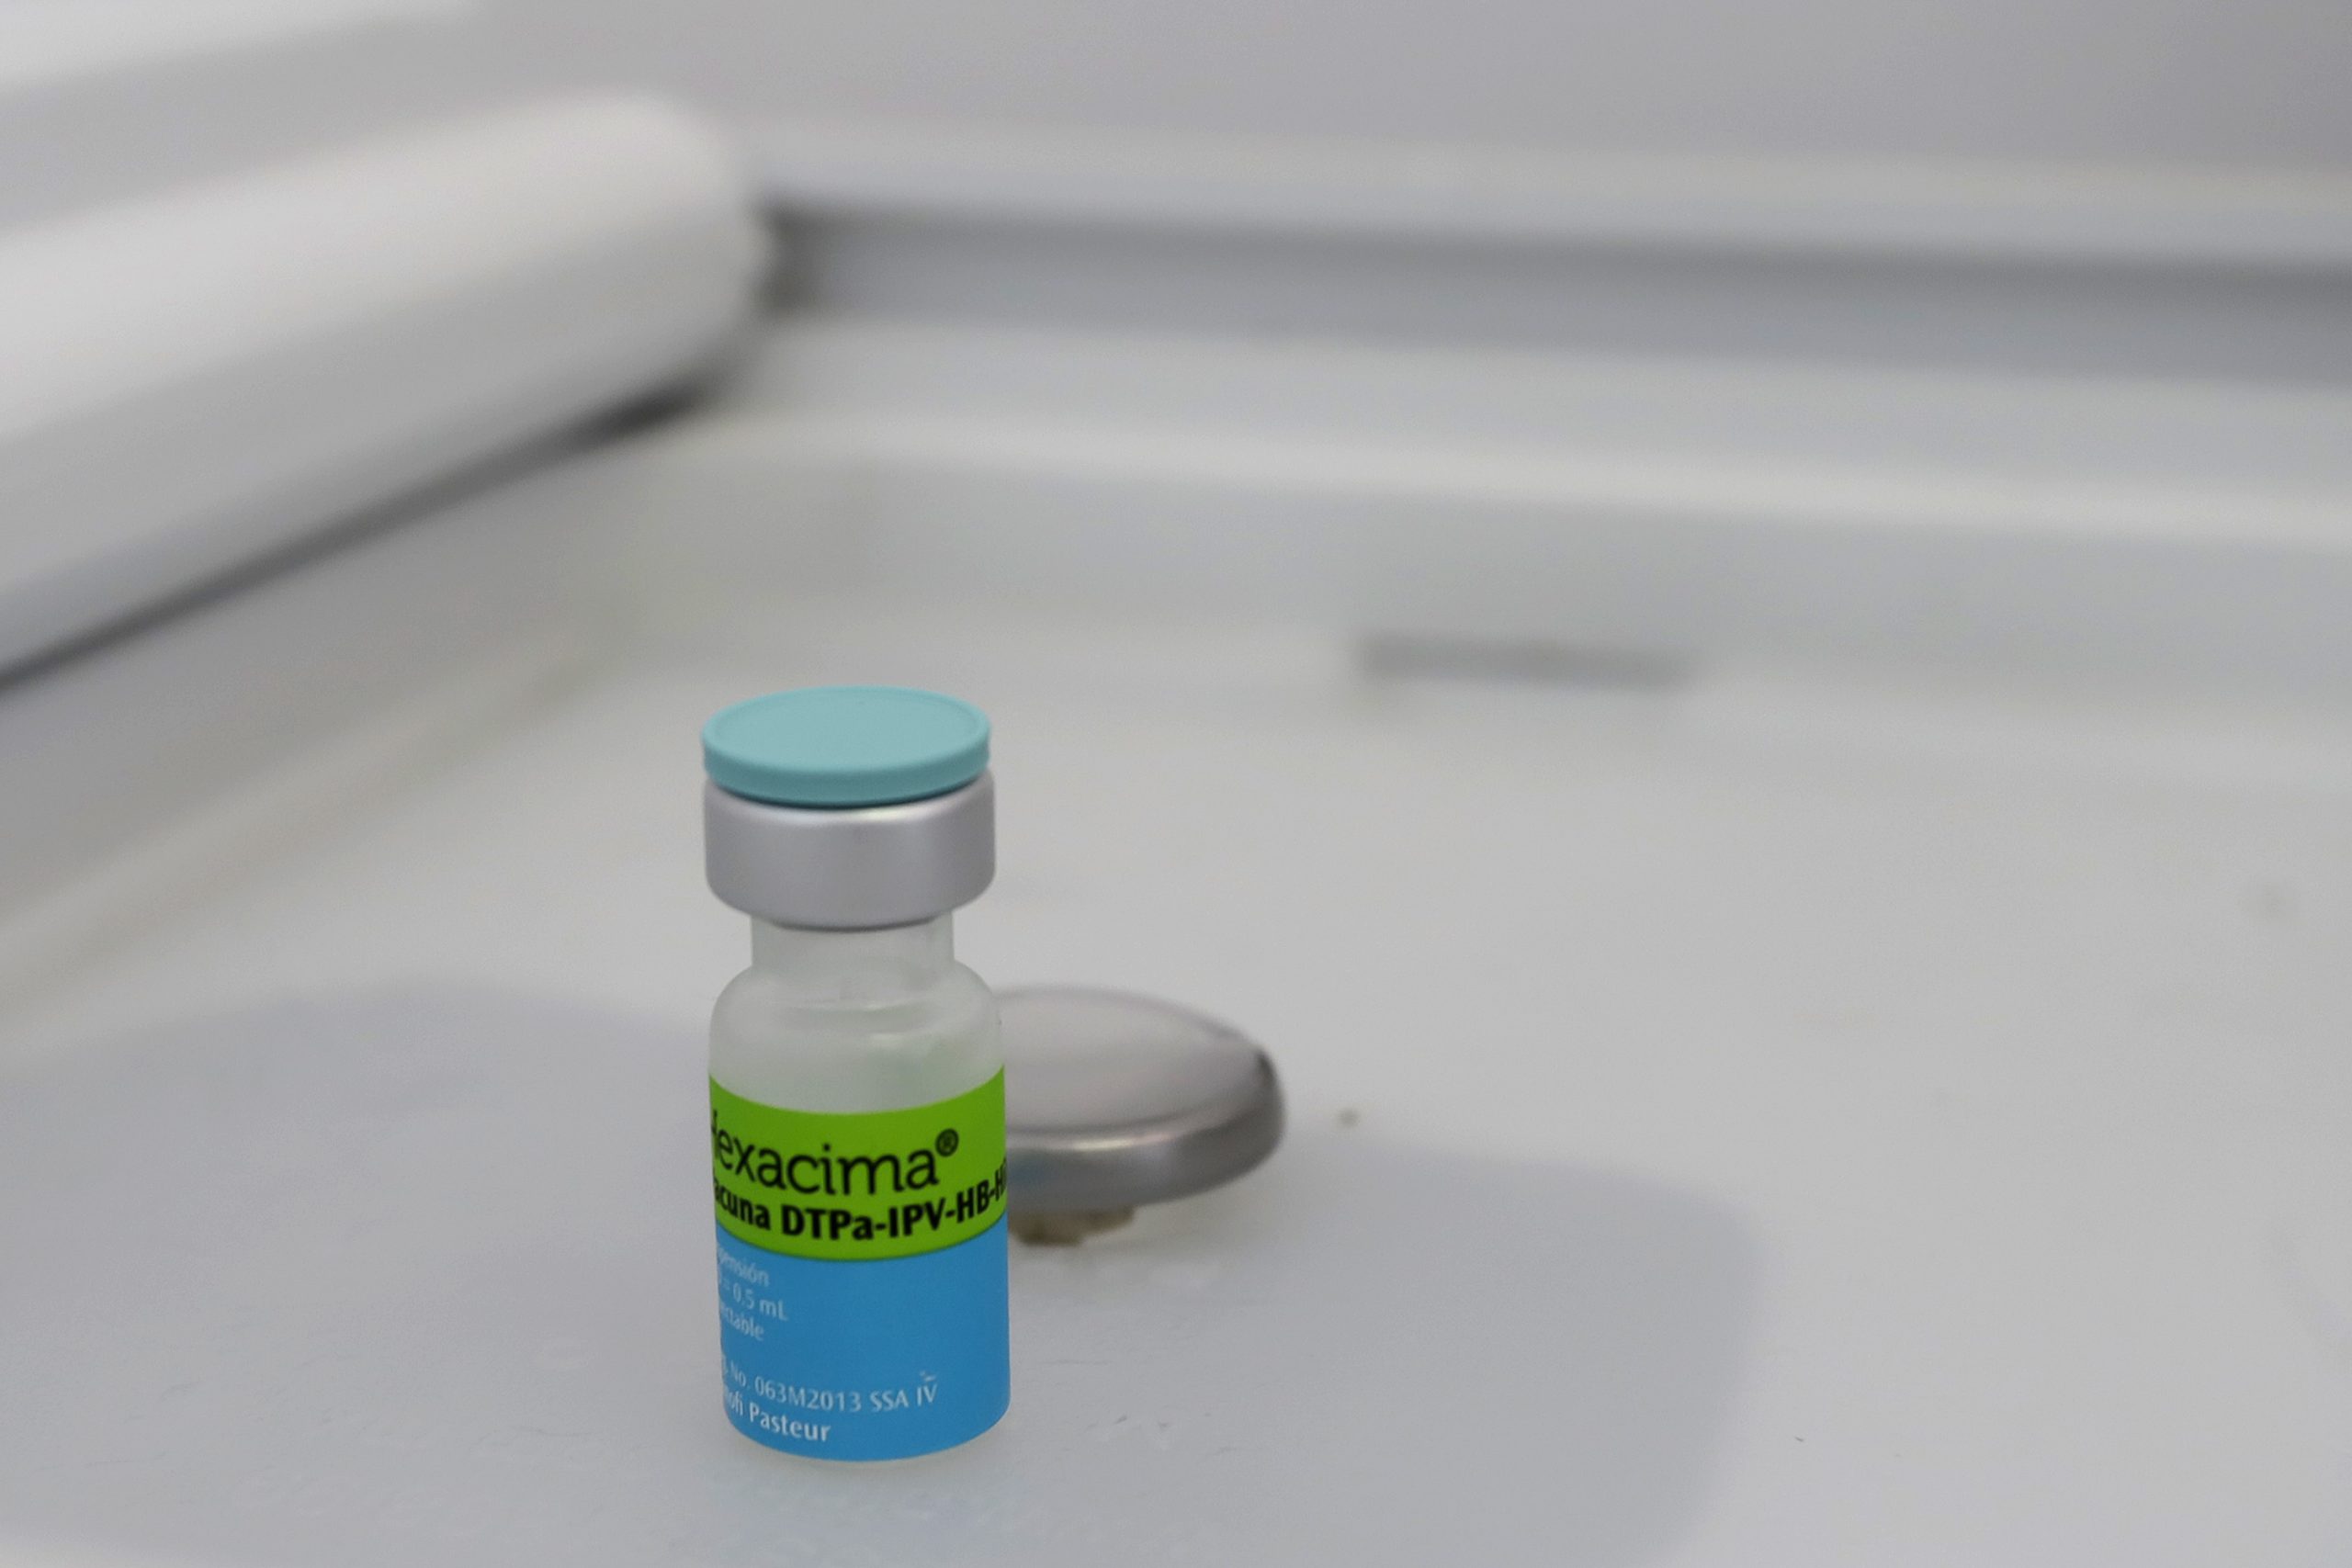 Salud reporta aumento de casos de influenza y bajo interés en vacunación